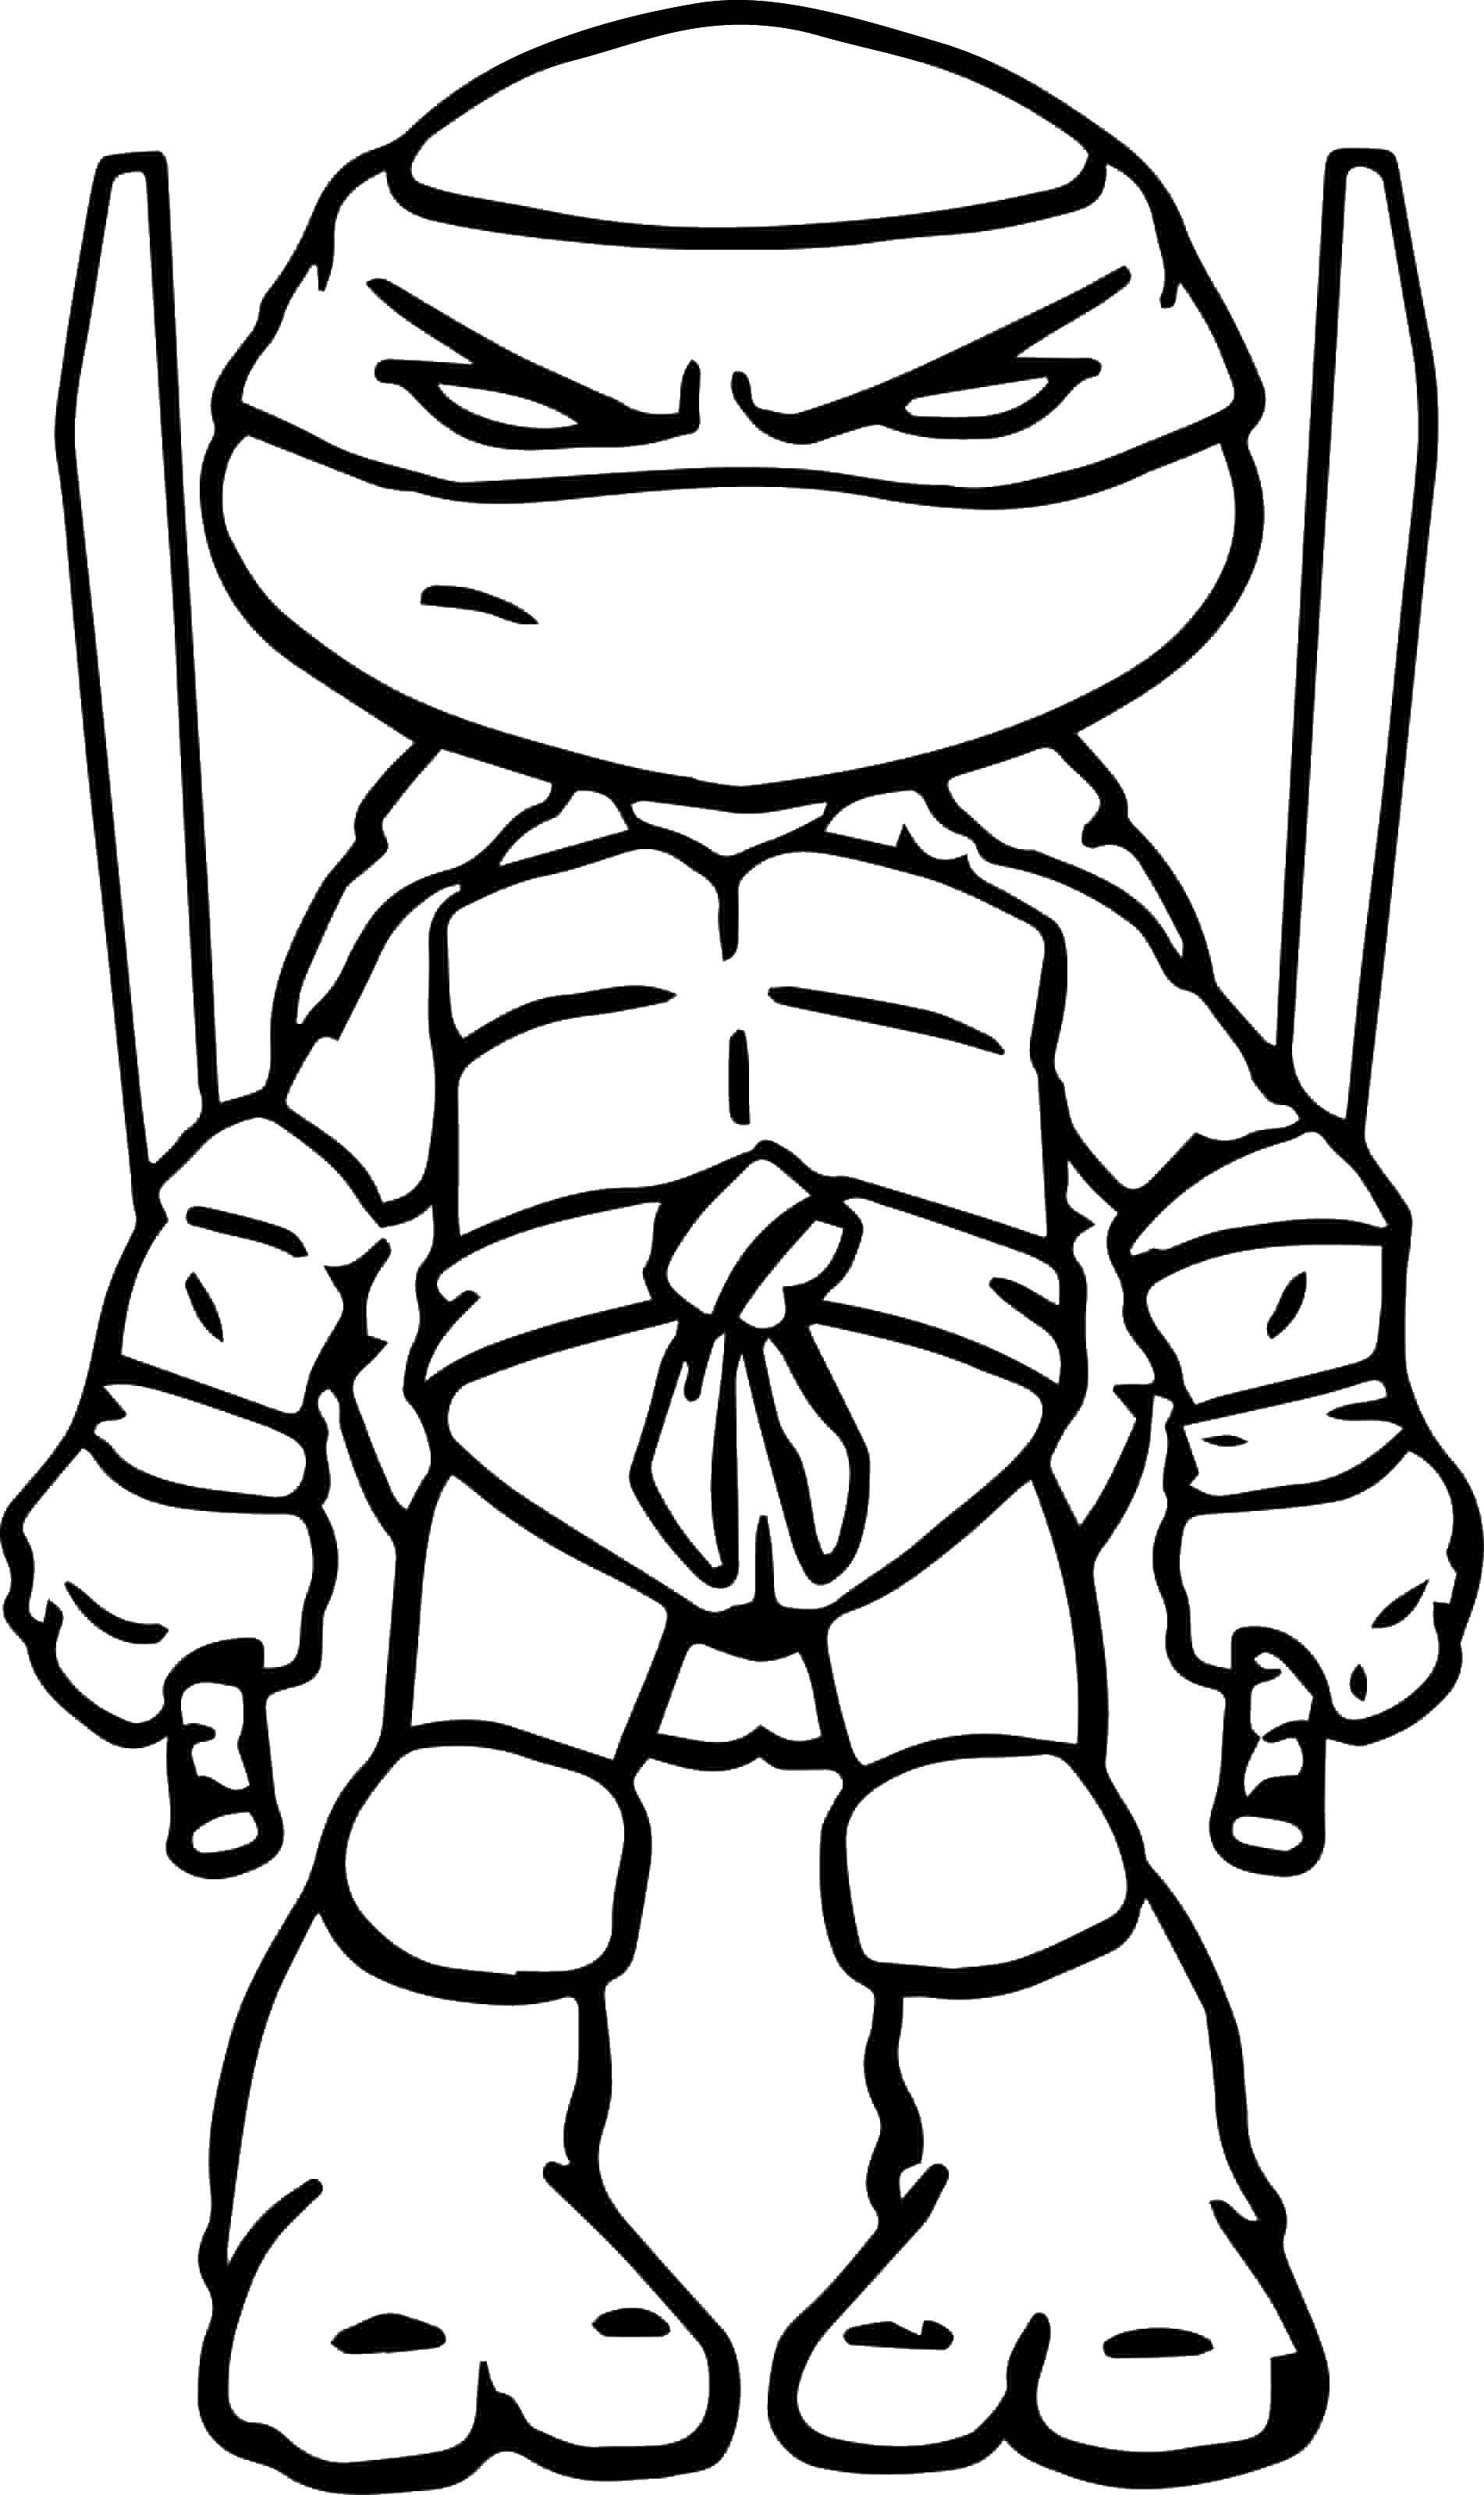 Coloring Little turtle ninja. Category ninja . Tags:  turtle, ninja, swords.